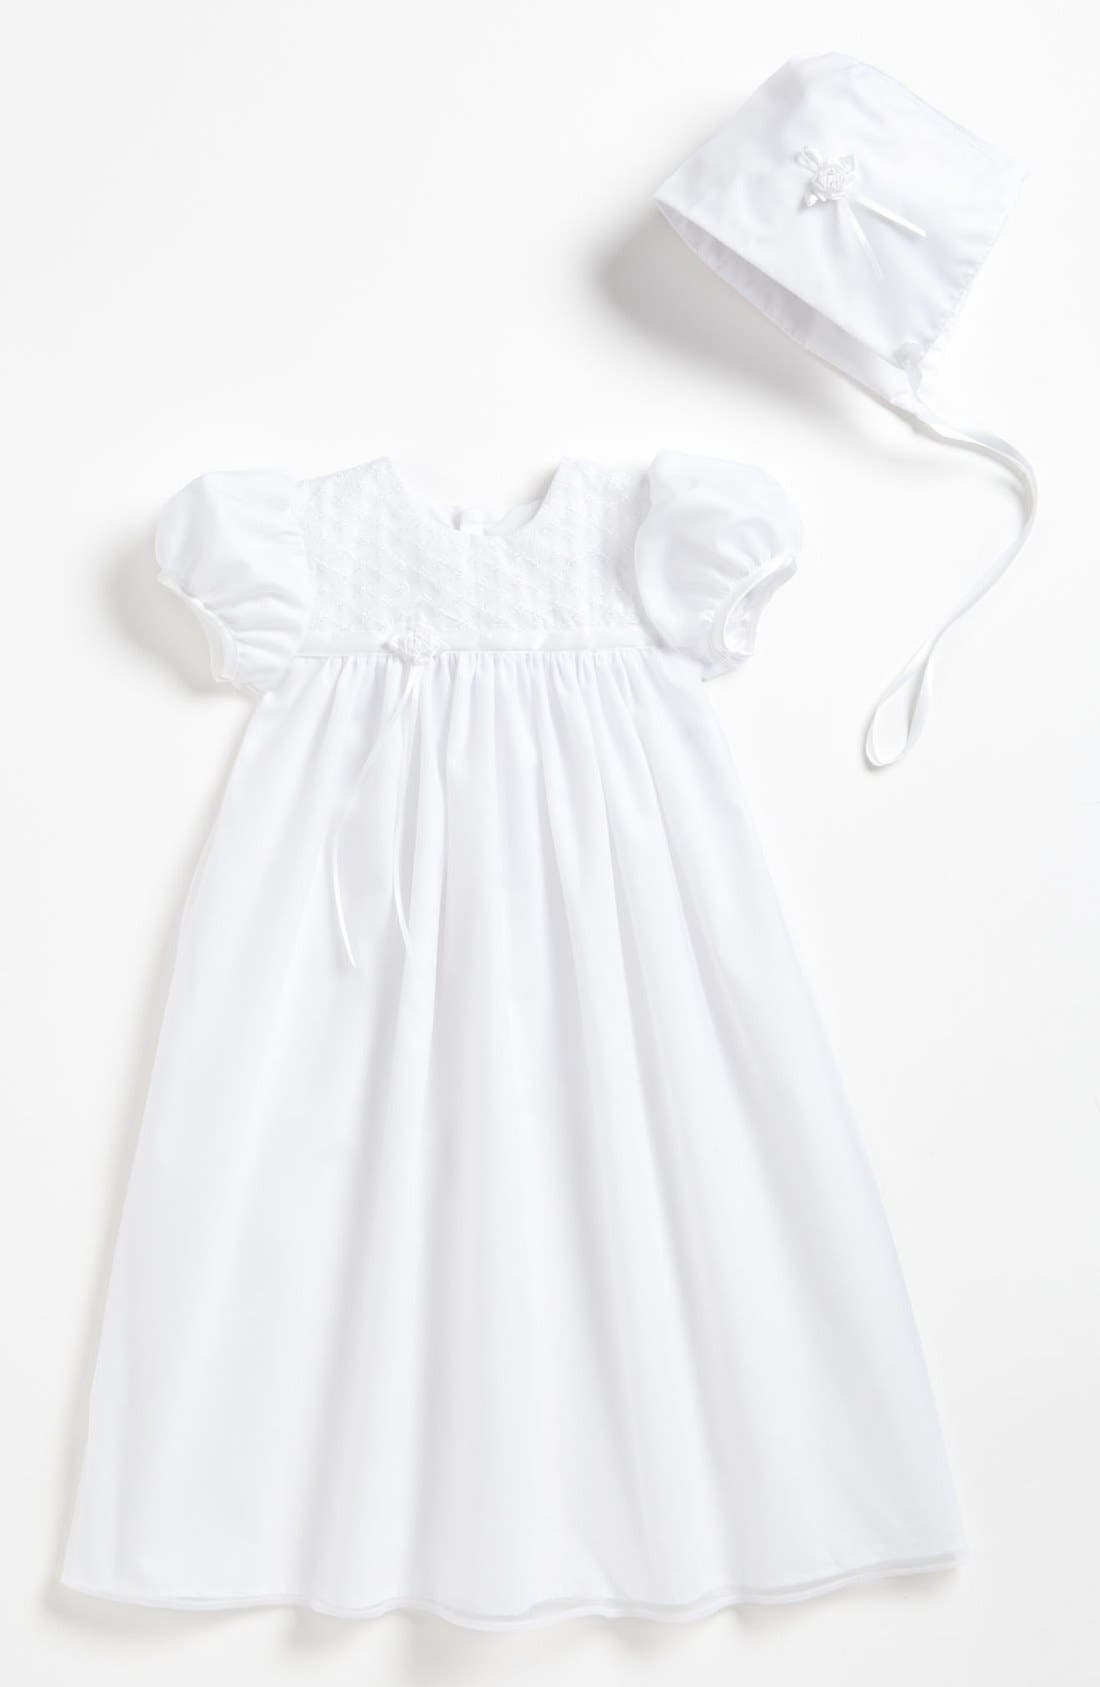 christening dress for newborn girl